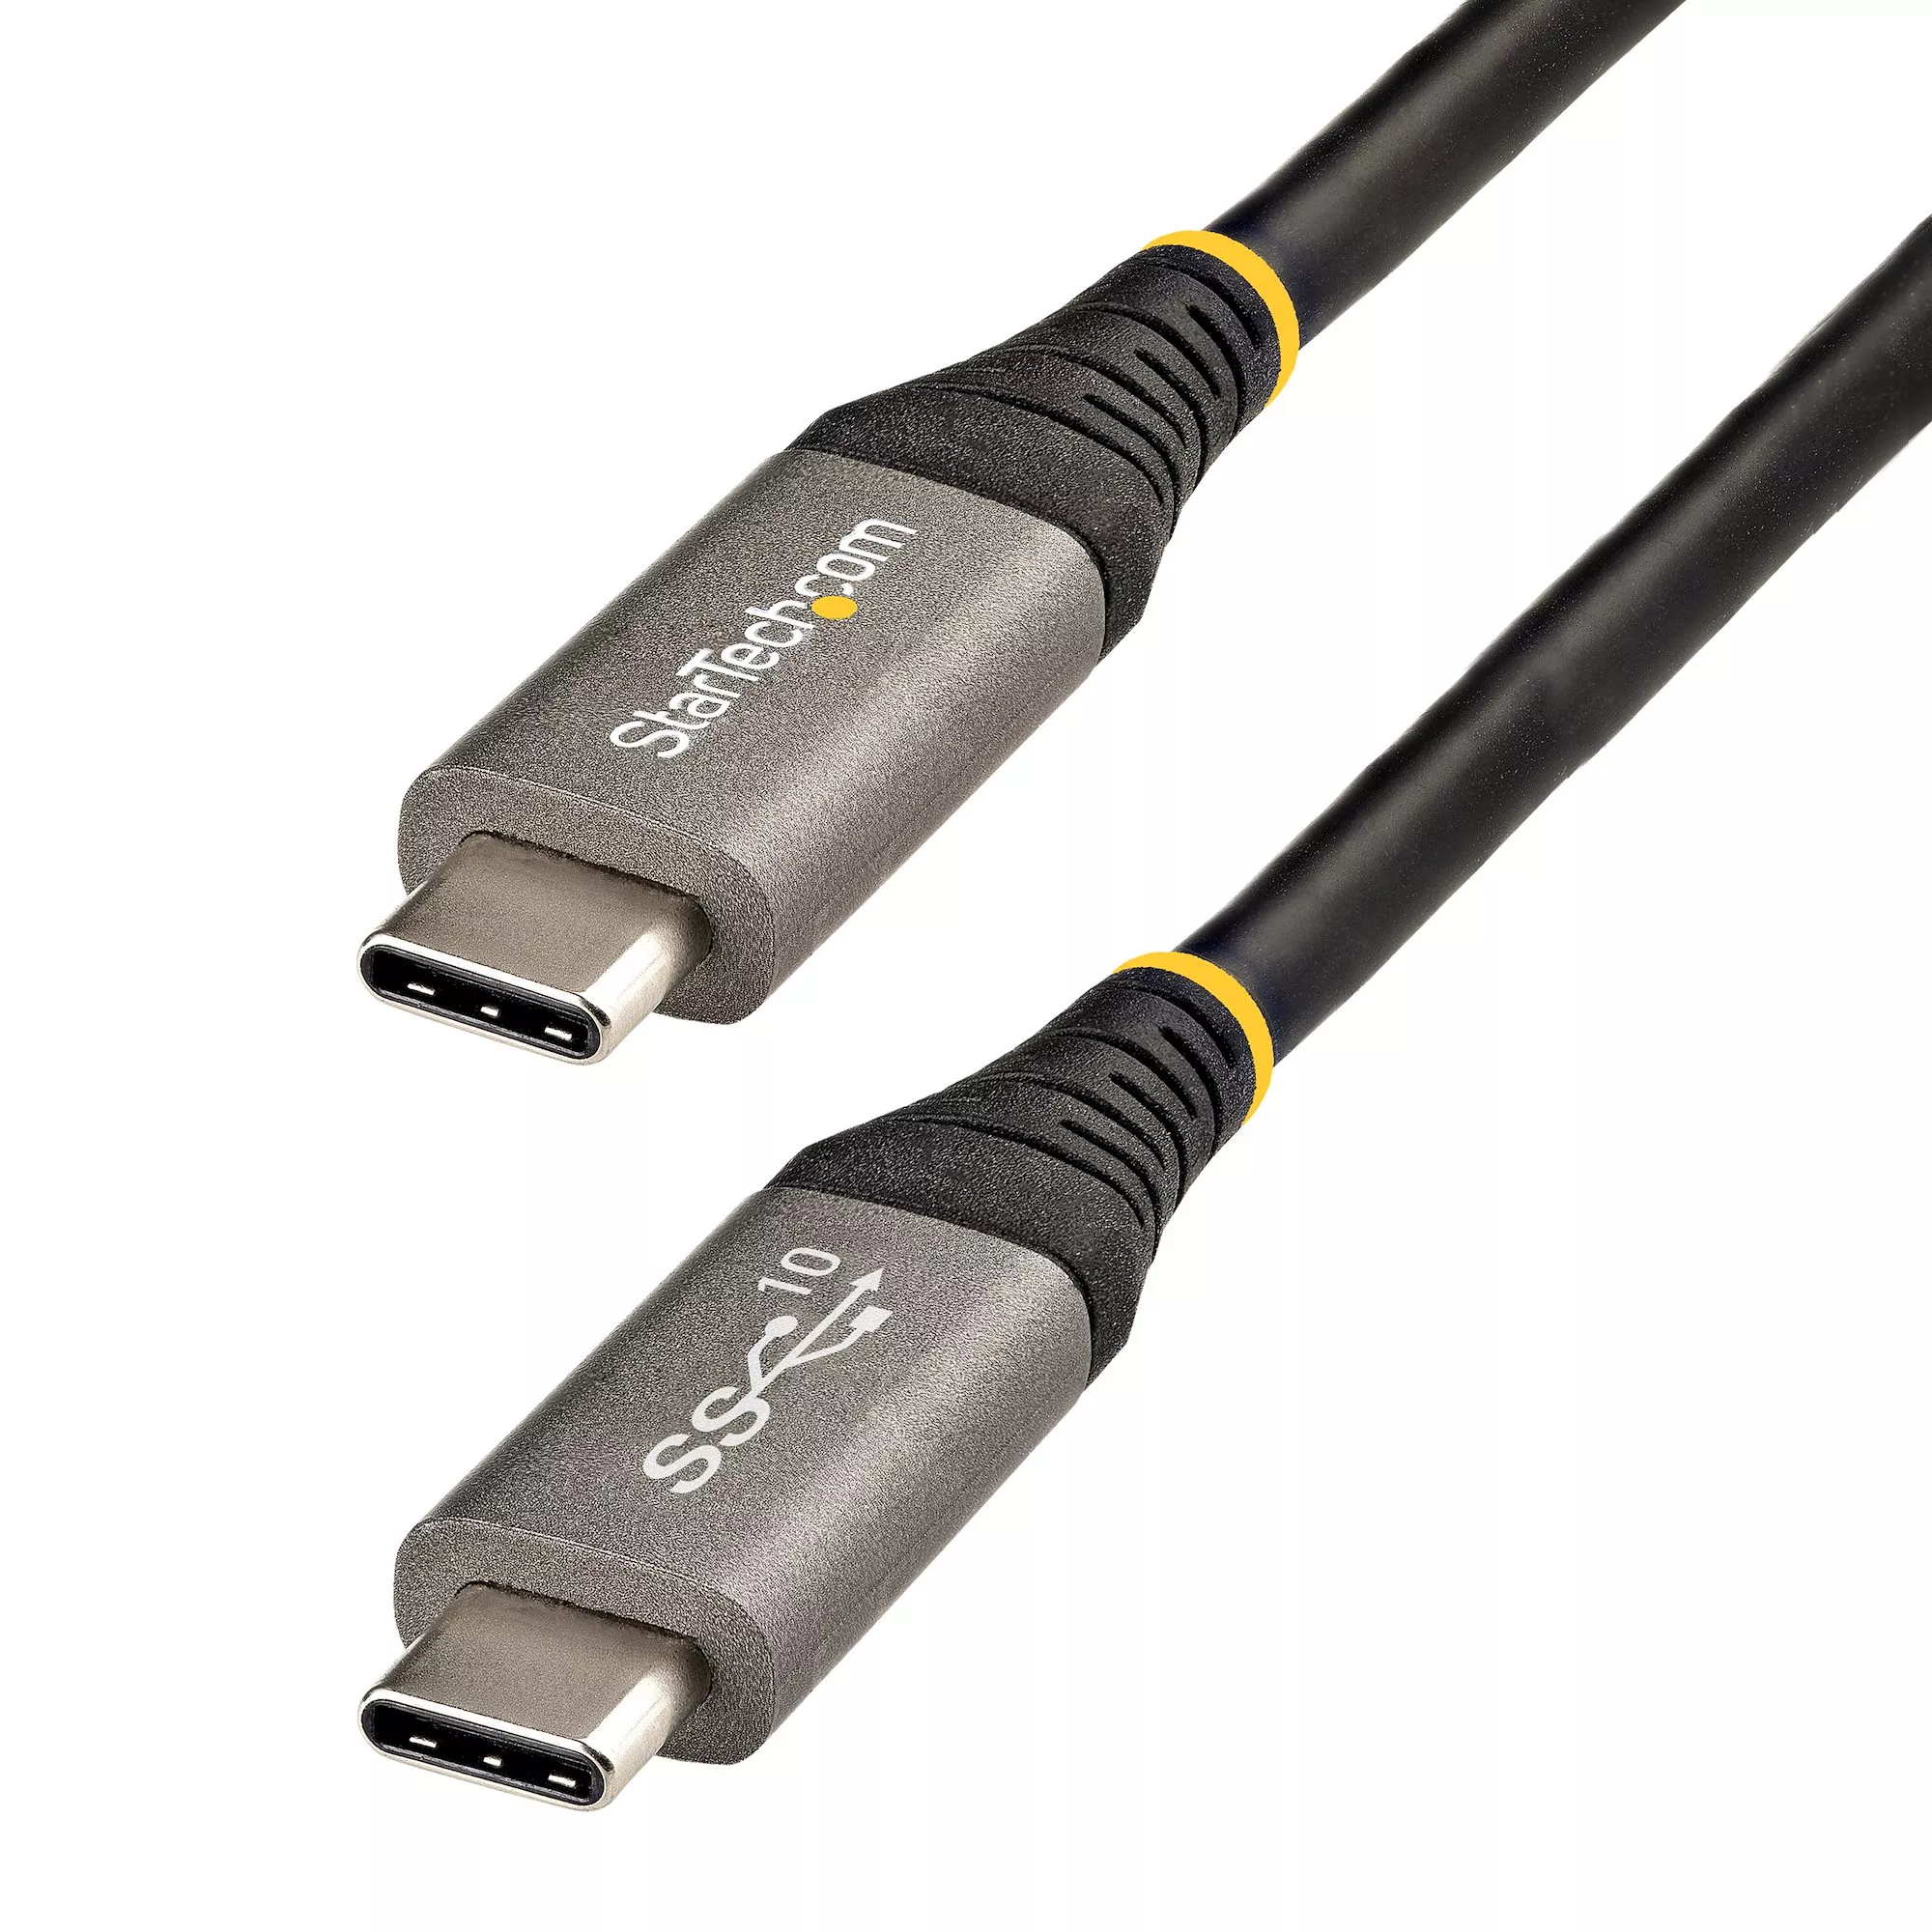 Revendeur officiel StarTech.com Câble USB C 10Gbps 50cm - Certifié USB-IF